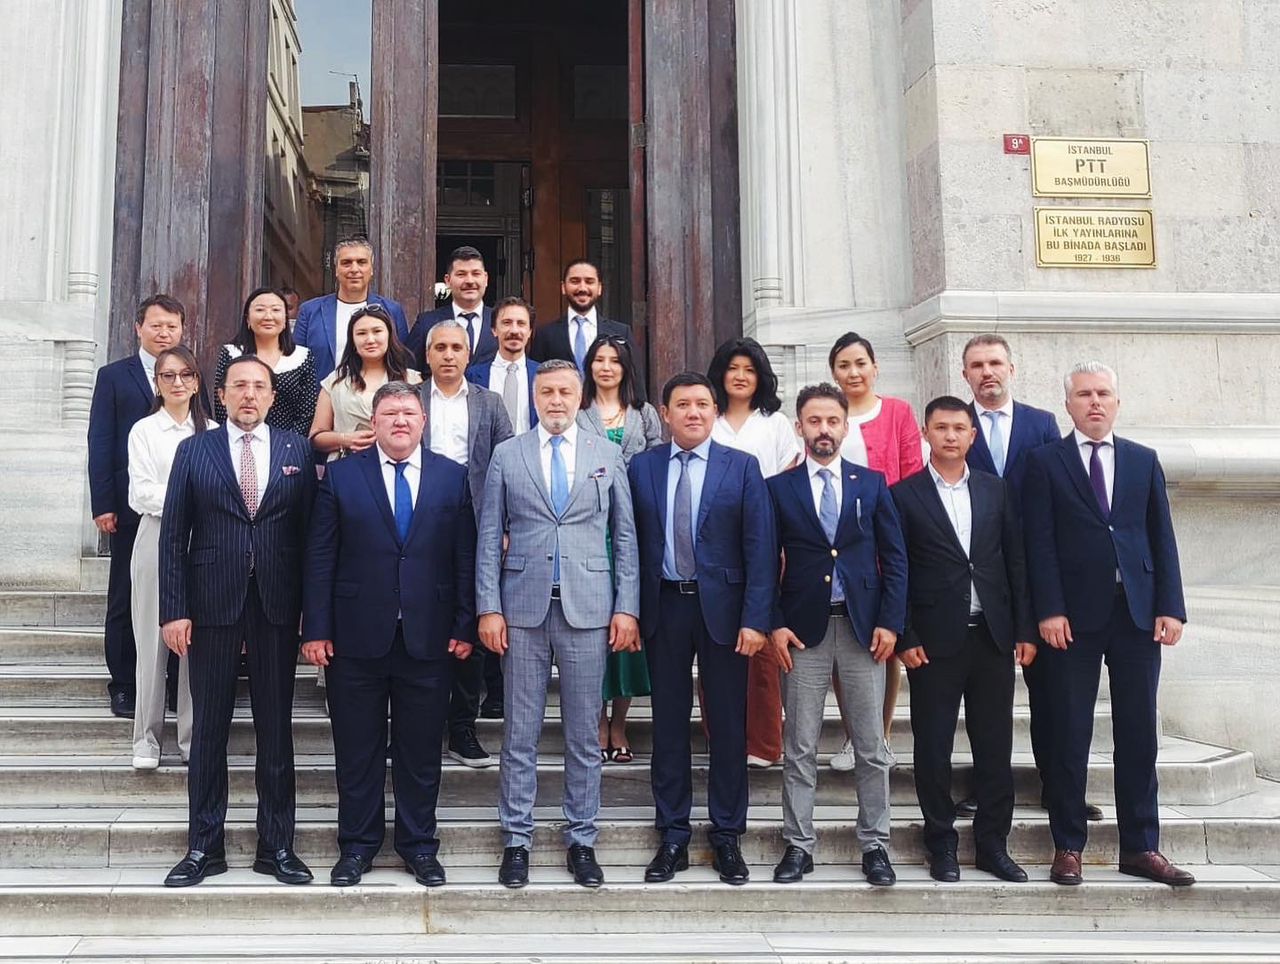 ОАО «Кыргыз почтасы» и «Элдик Банк» заключило договор с дочерней компанией Почты Турции турецкой компанией PtteM по развитию рынка электронной коммерции.